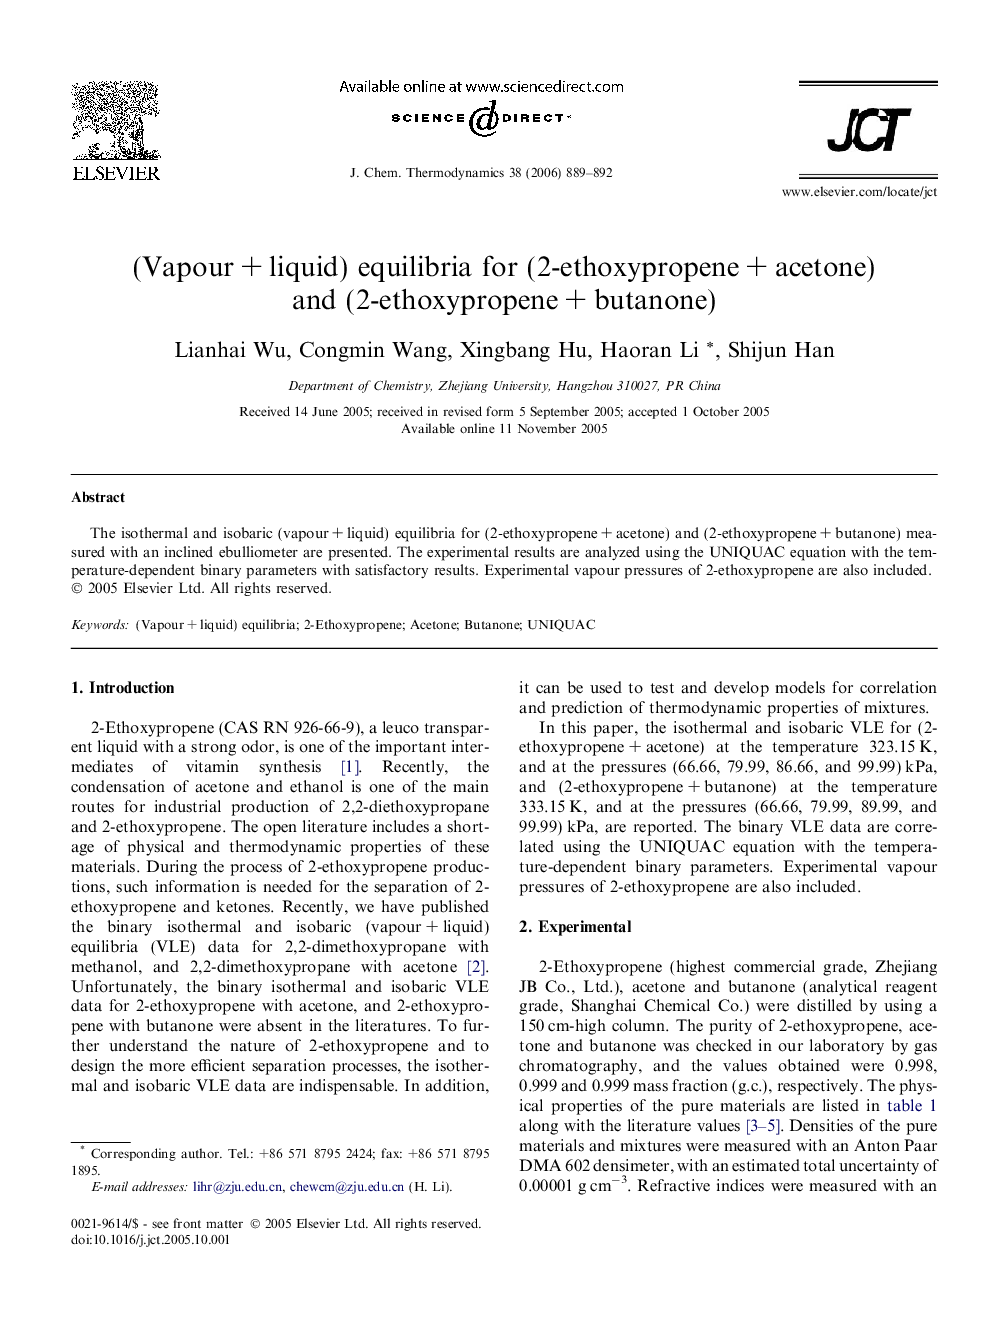 (Vapour + liquid) equilibria for (2-ethoxypropene + acetone) and (2-ethoxypropene + butanone)